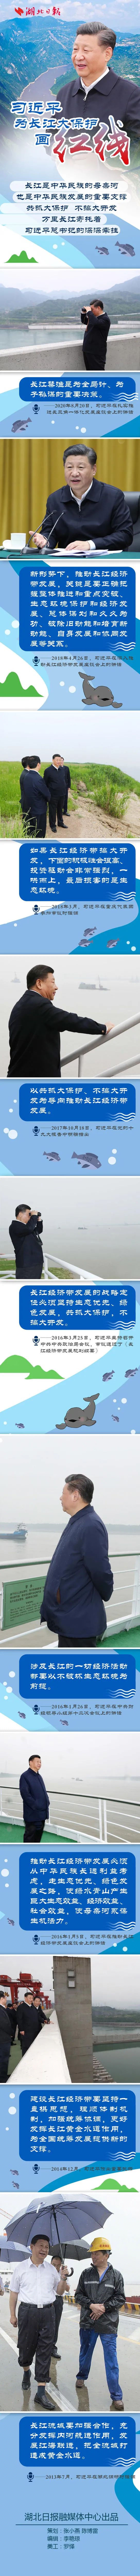 習近平為長江大保護畫“紅線”